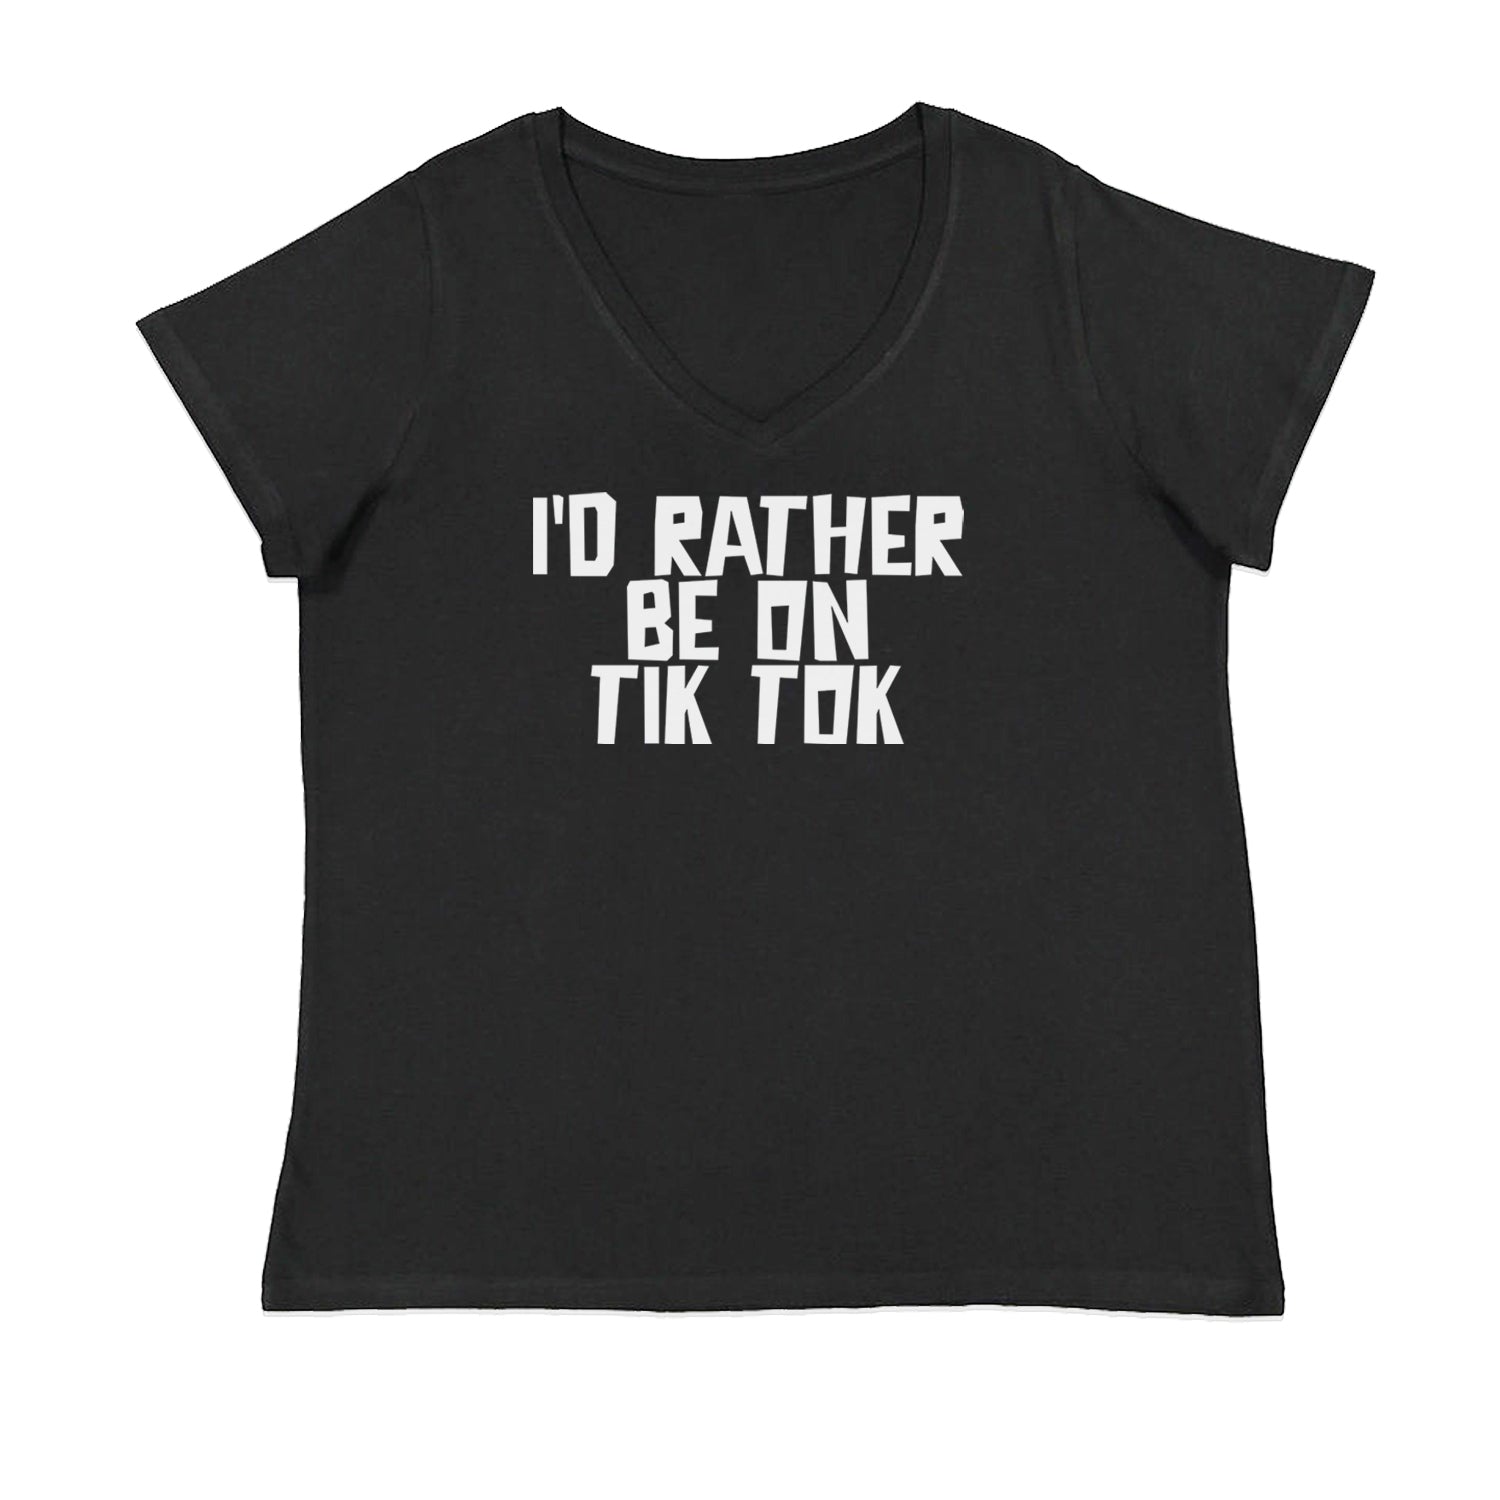 I'd Rather Be On TikTok Womens Plus Size V-Neck T-shirt